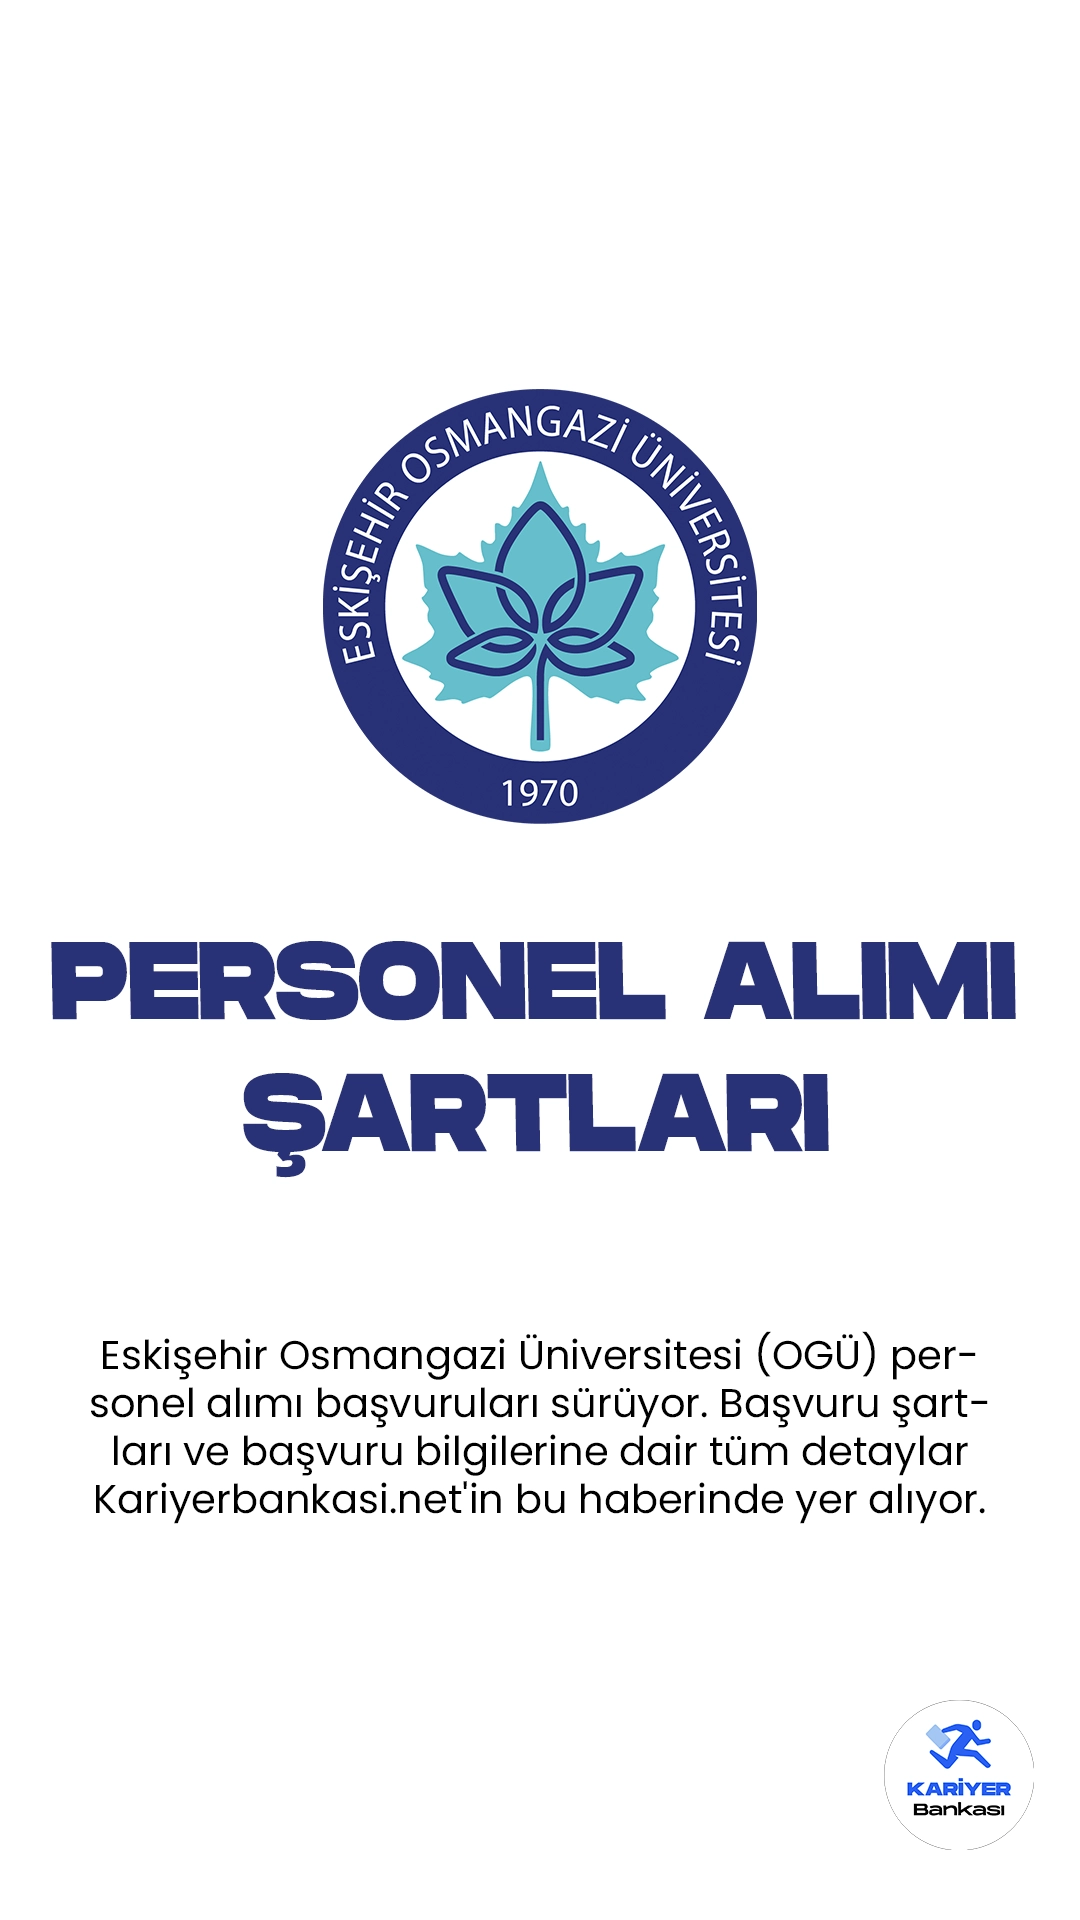 Eskişehir Osmangazi Üniversitesi (OGÜ) personel alımı başvuruları sürüyor. Başvuru şartları ve başvuru bilgilerine dair tüm detaylar Kariyerbankasi.net'in bu haberinde yer alıyor.